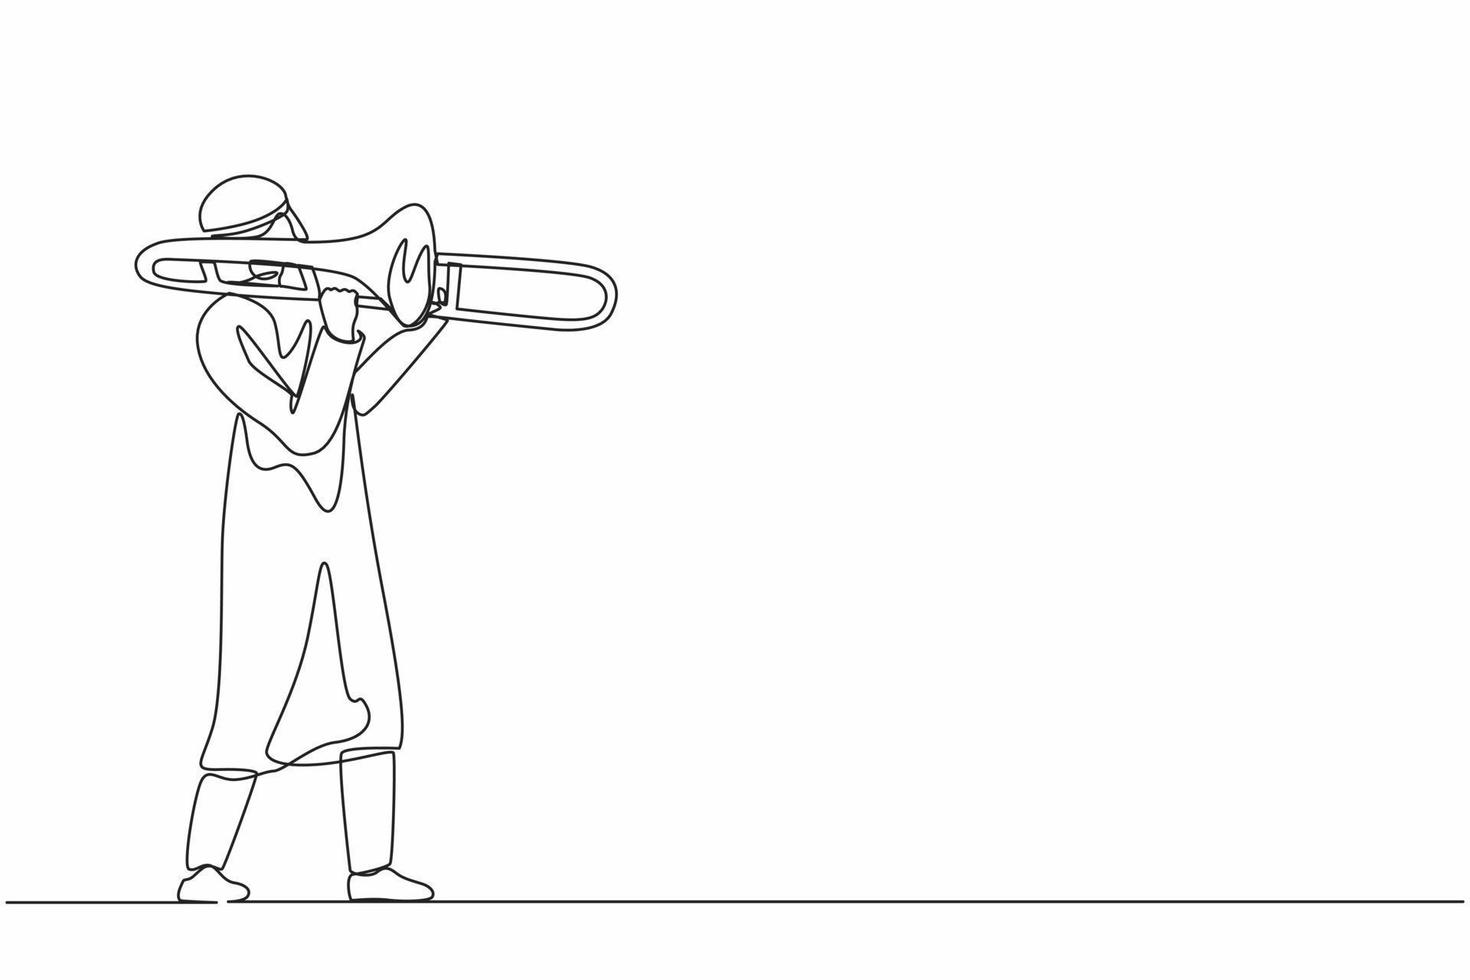 suonatore di trombone arabo a una linea continua. esecutore maschio suona uno strumento a fiato. ragazzo artista di musica. uomo jazz. musicista suonare la tromba. evento di musica classica. vettore di disegno grafico a linea singola